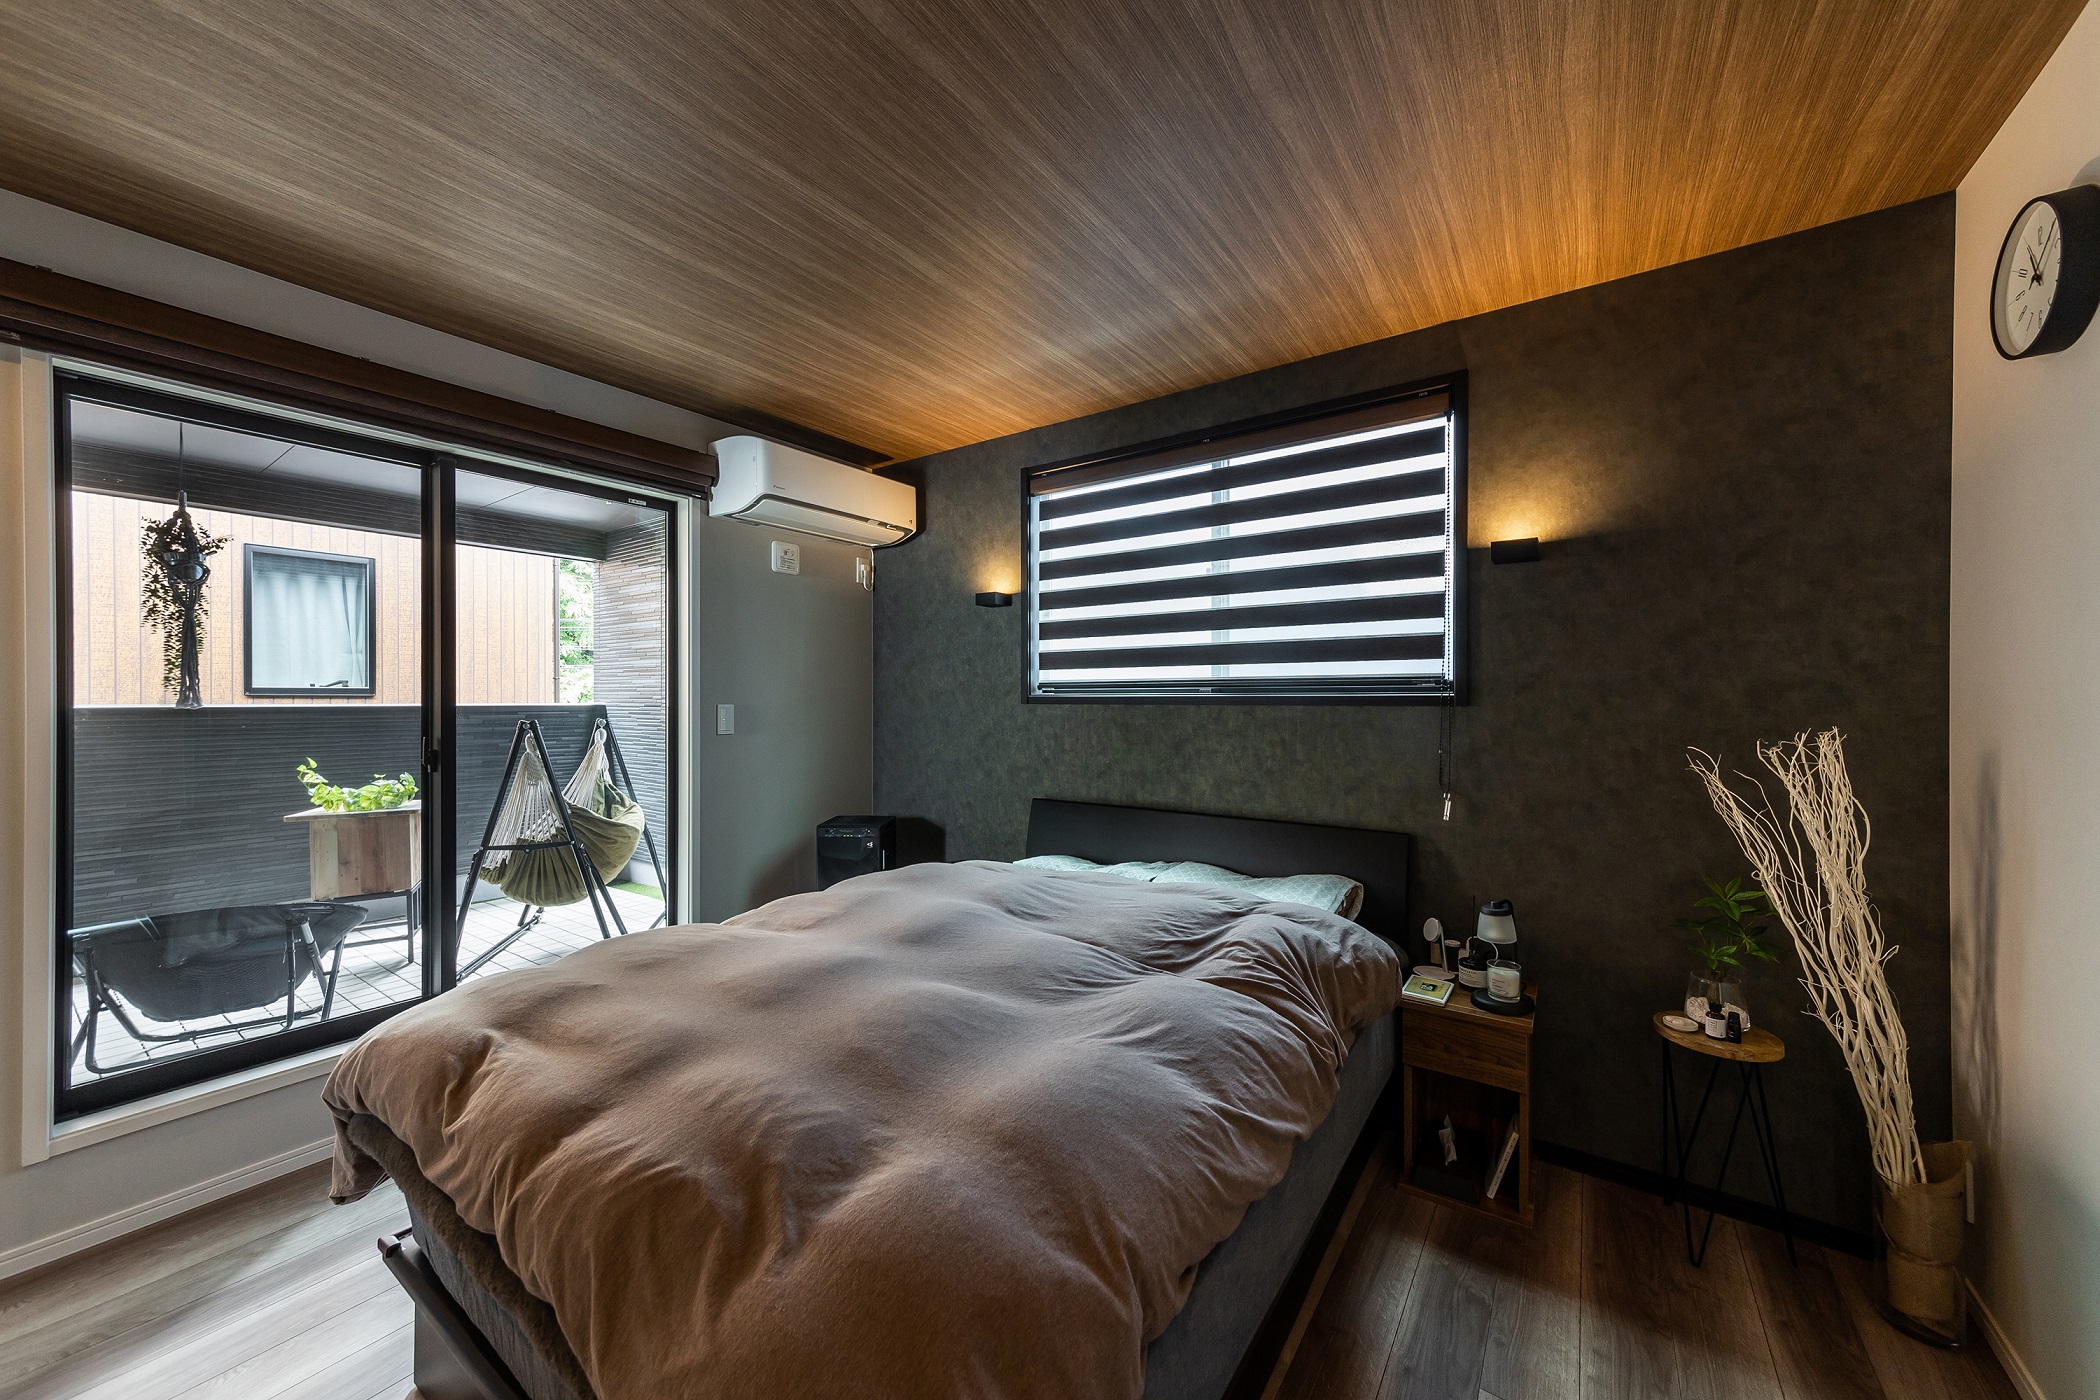 落ち着いた雰囲気の寝室は、壁面のブラケットライトの光が天井を照らし、くつろぎの空間を演出してくれます。